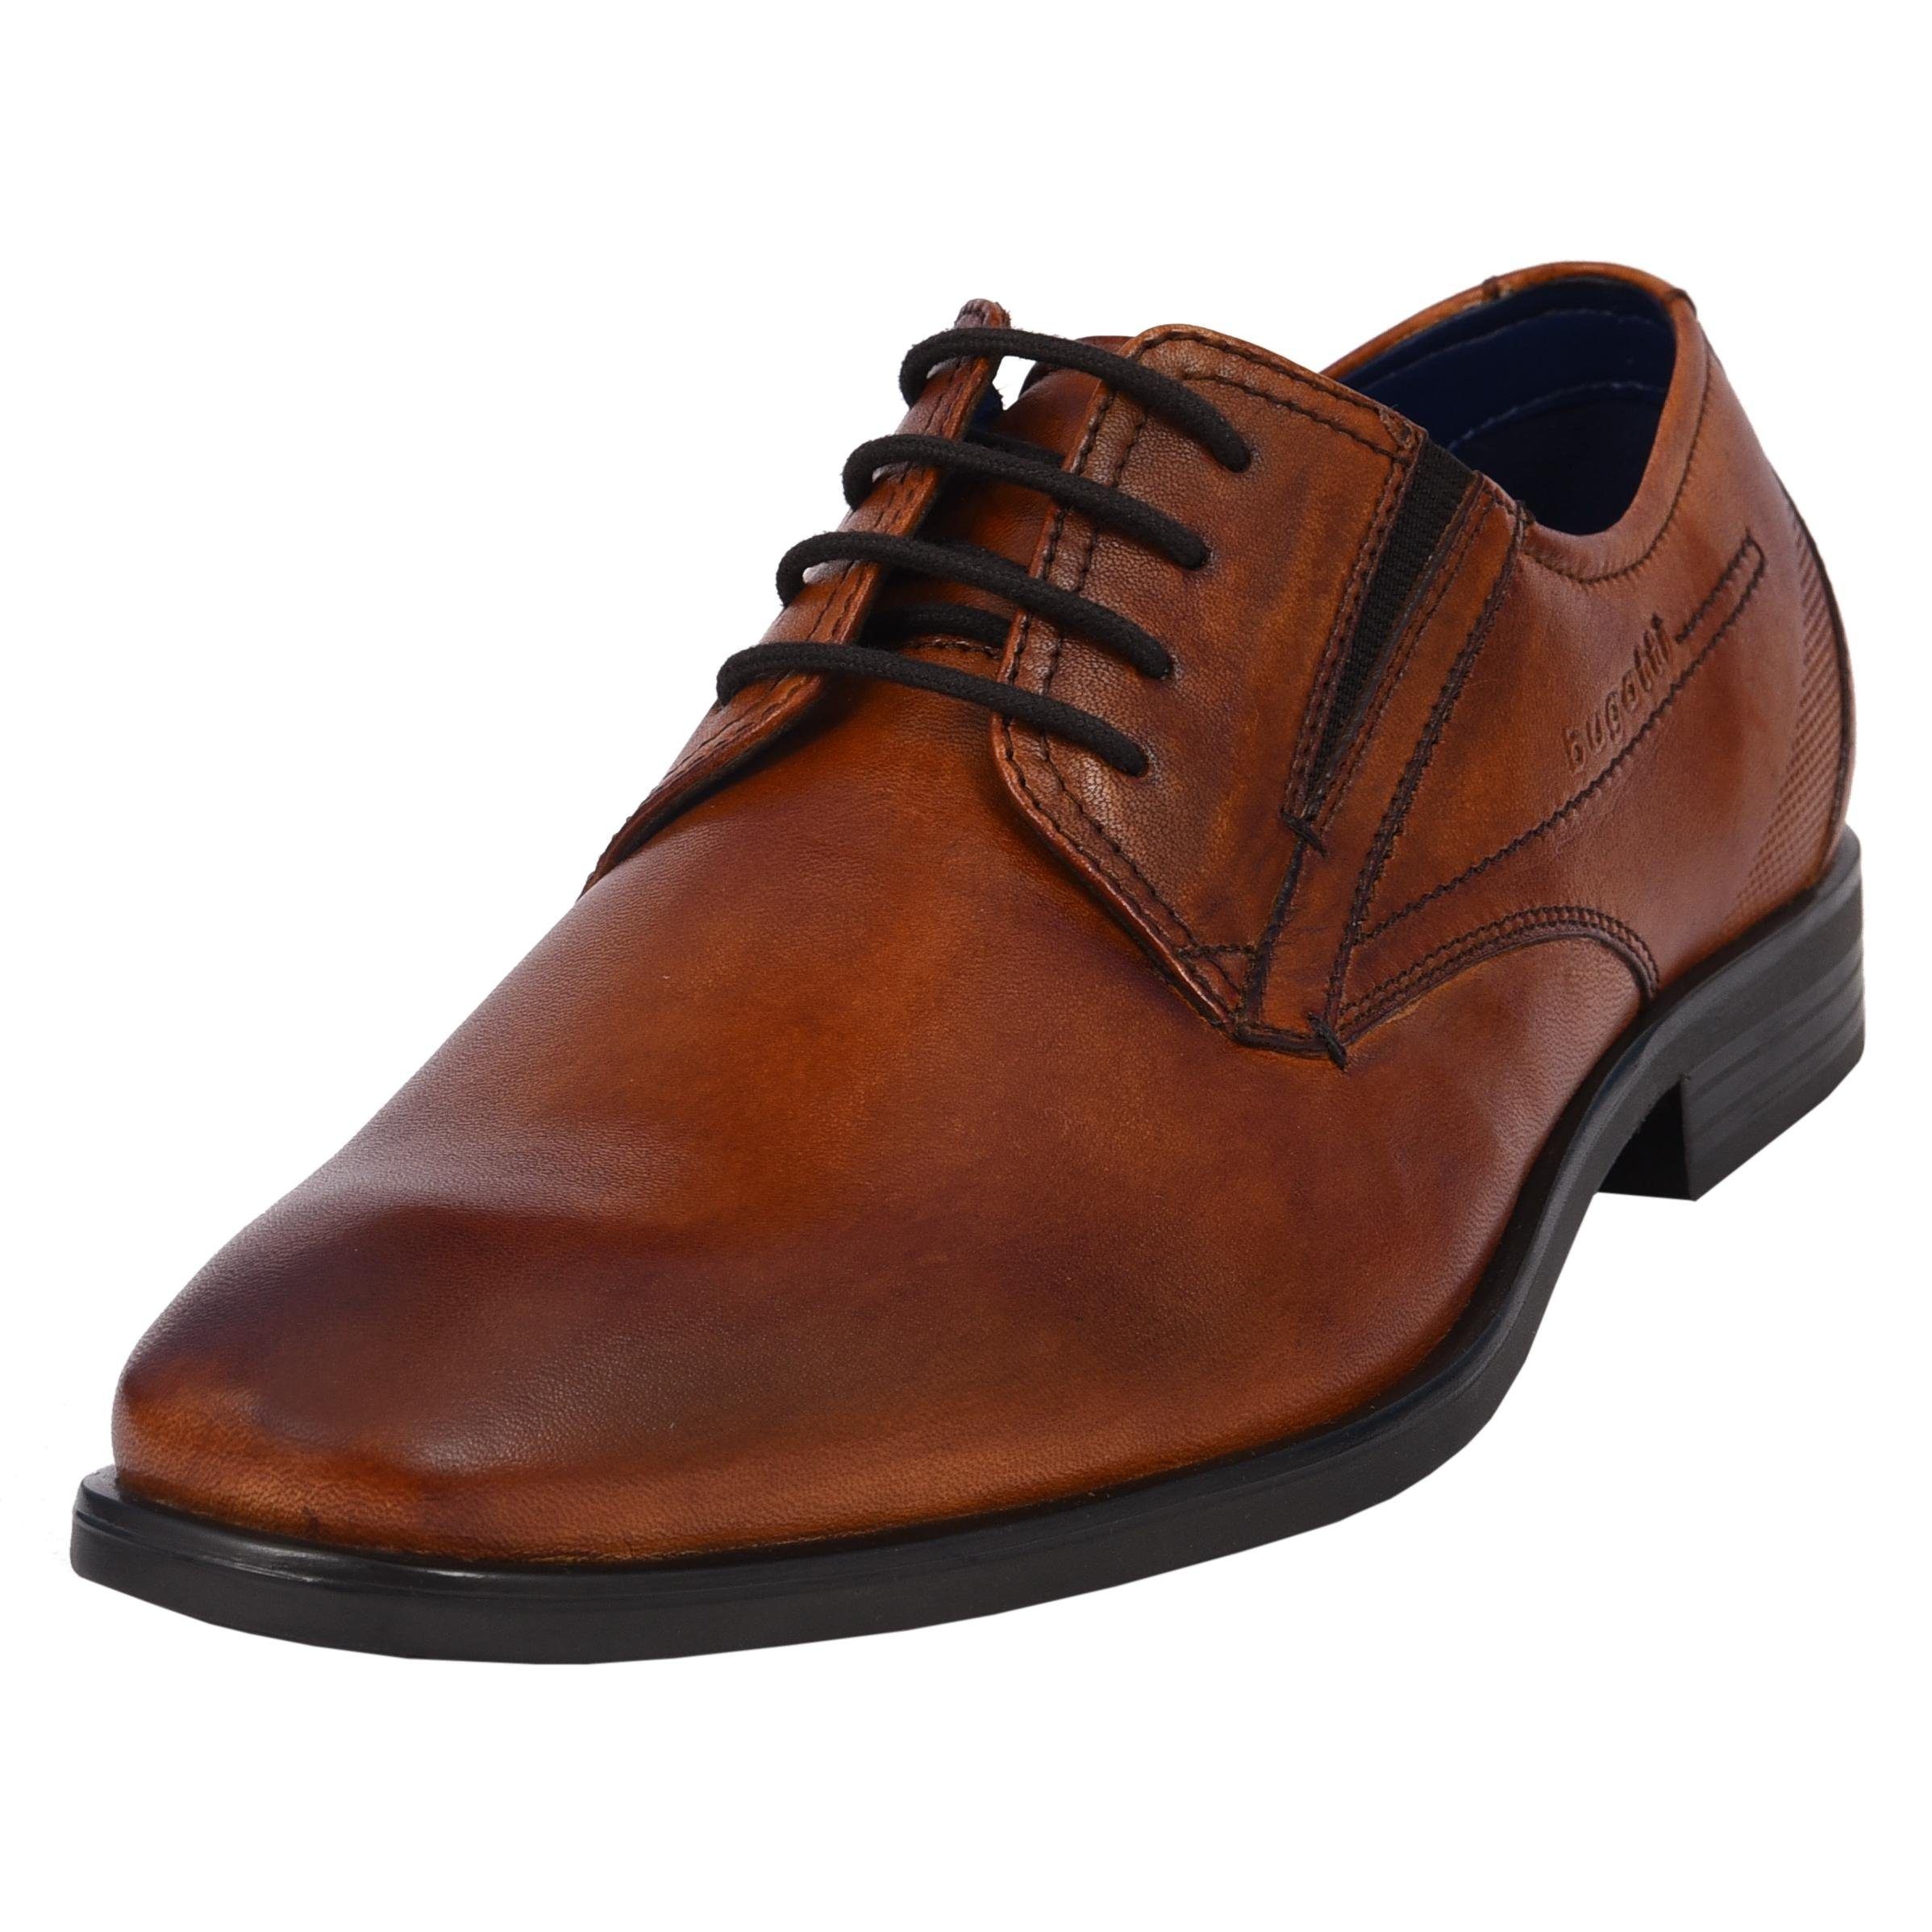 Herren Business-Schuhe » Für einen eleganten Look | OTTO